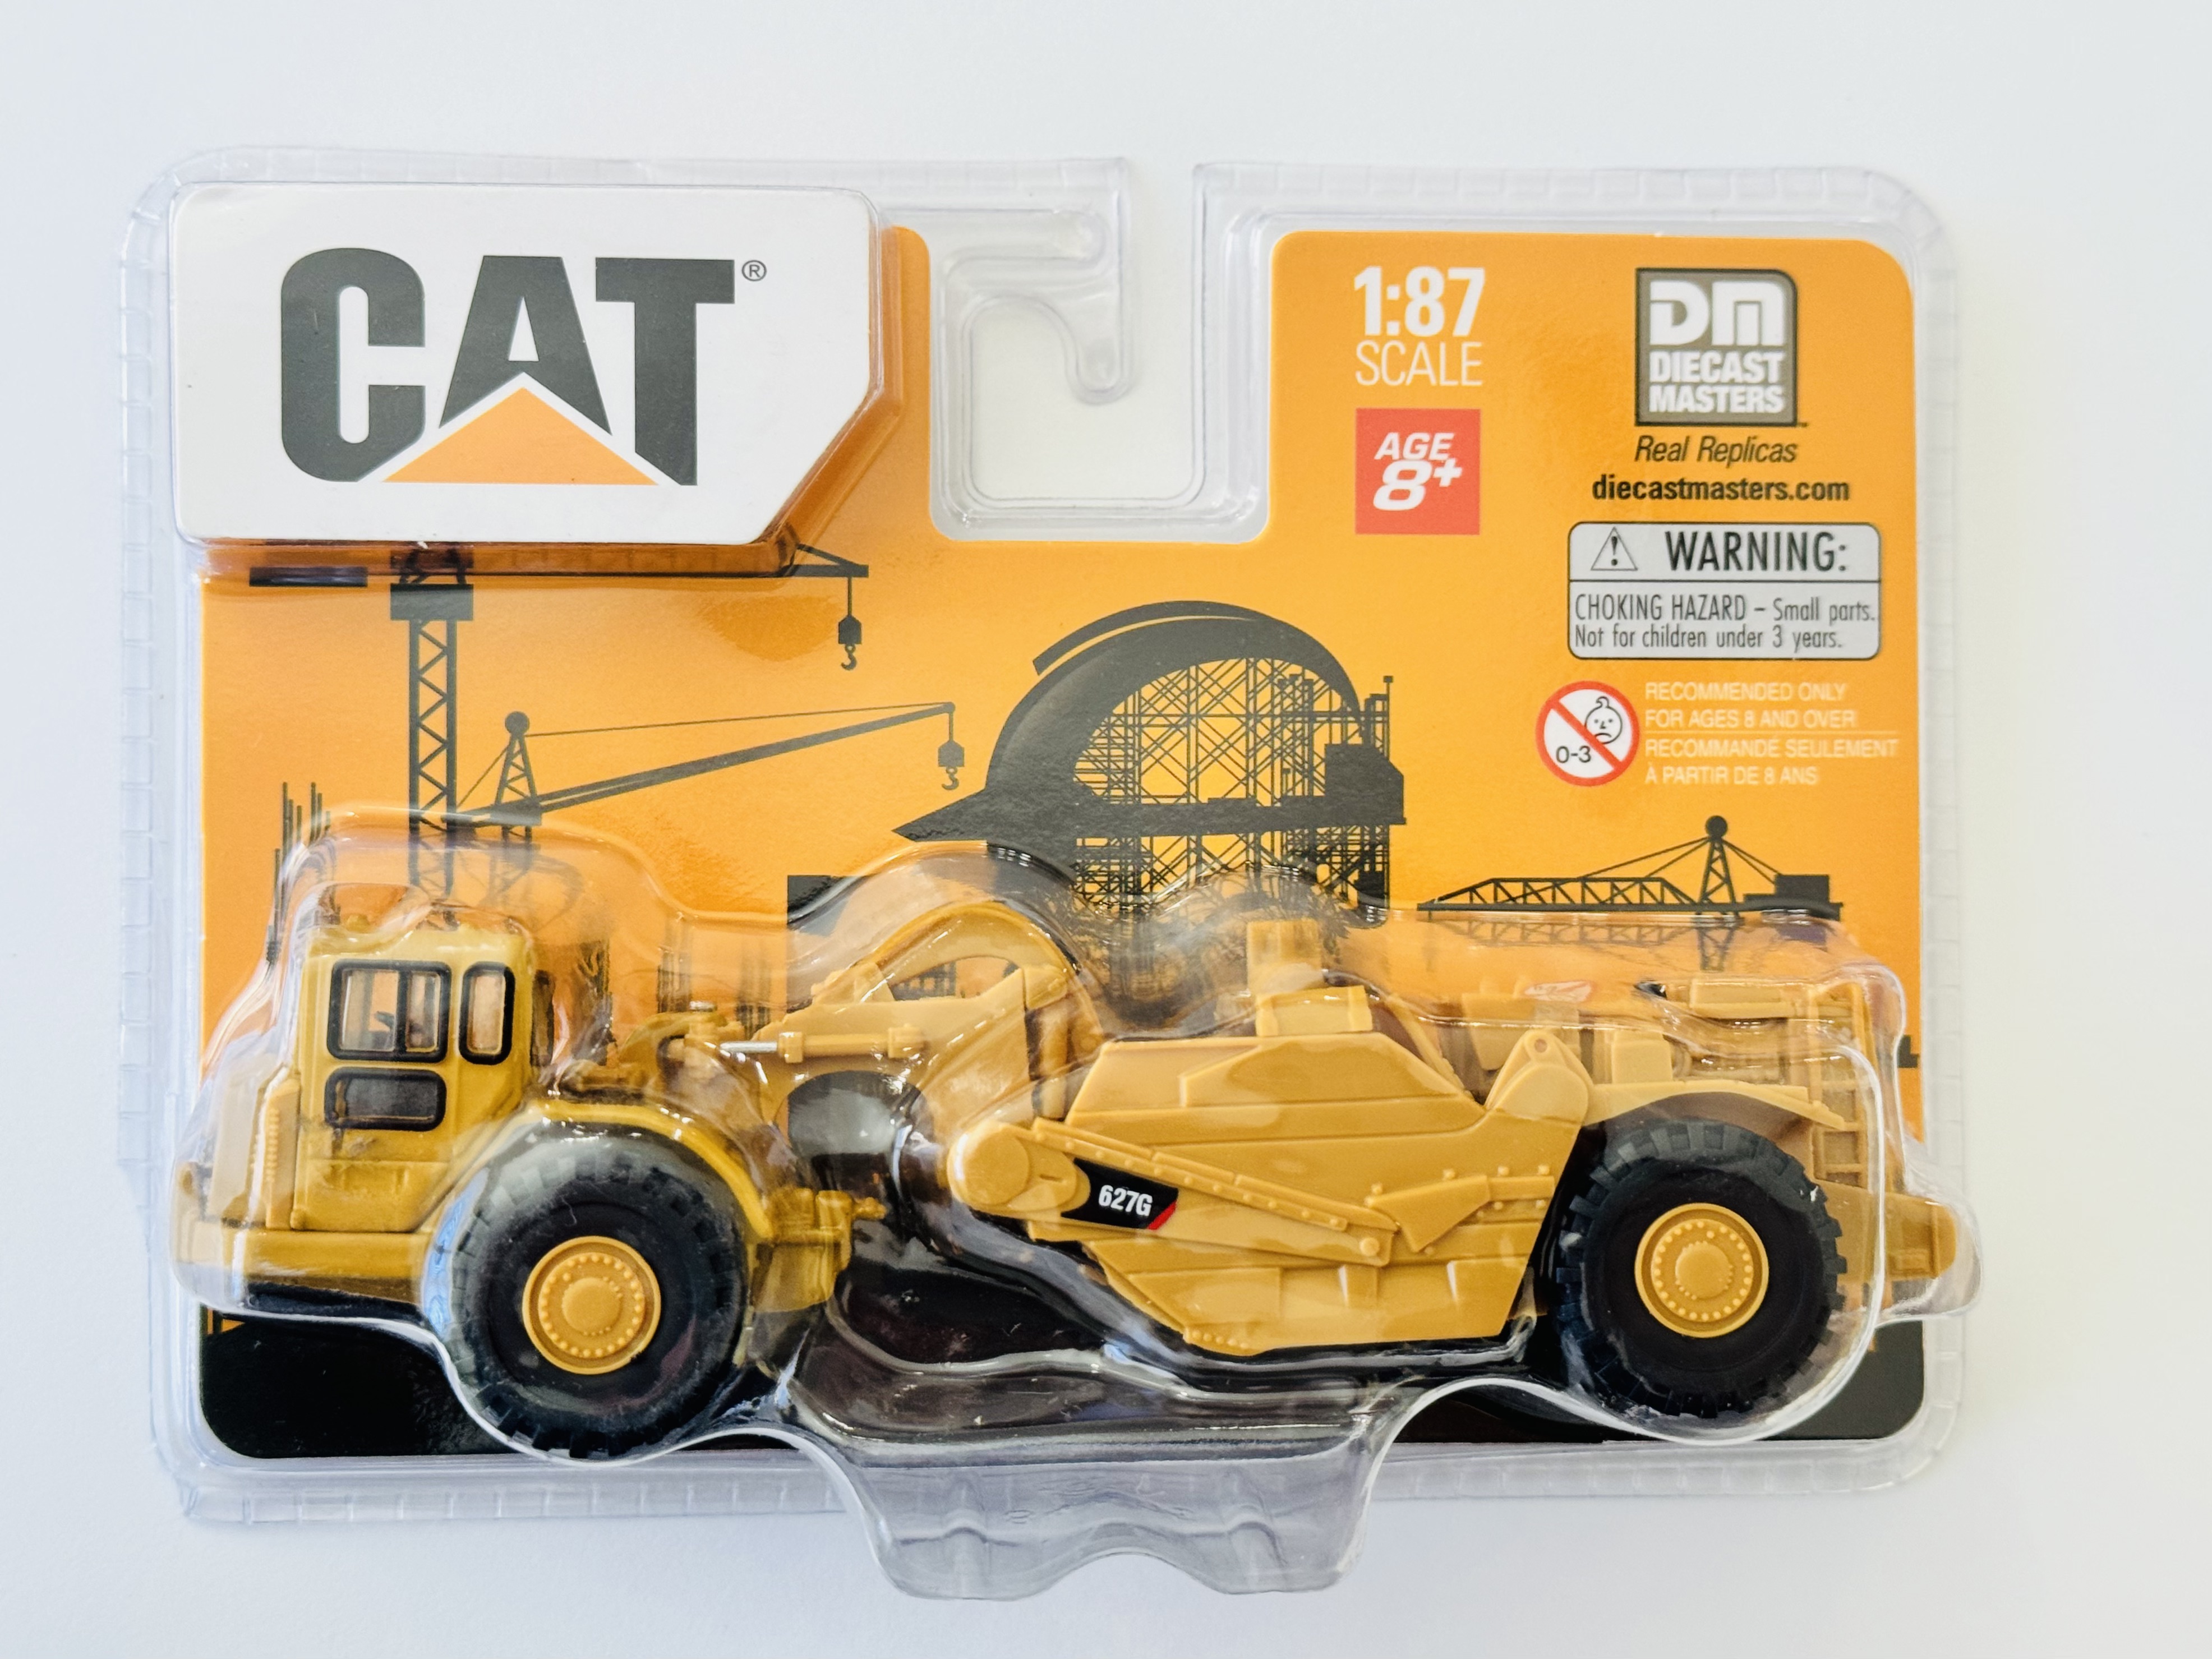 DM Diecast Masters CAT 1:87 Scale CAT 627G Augur Scraper